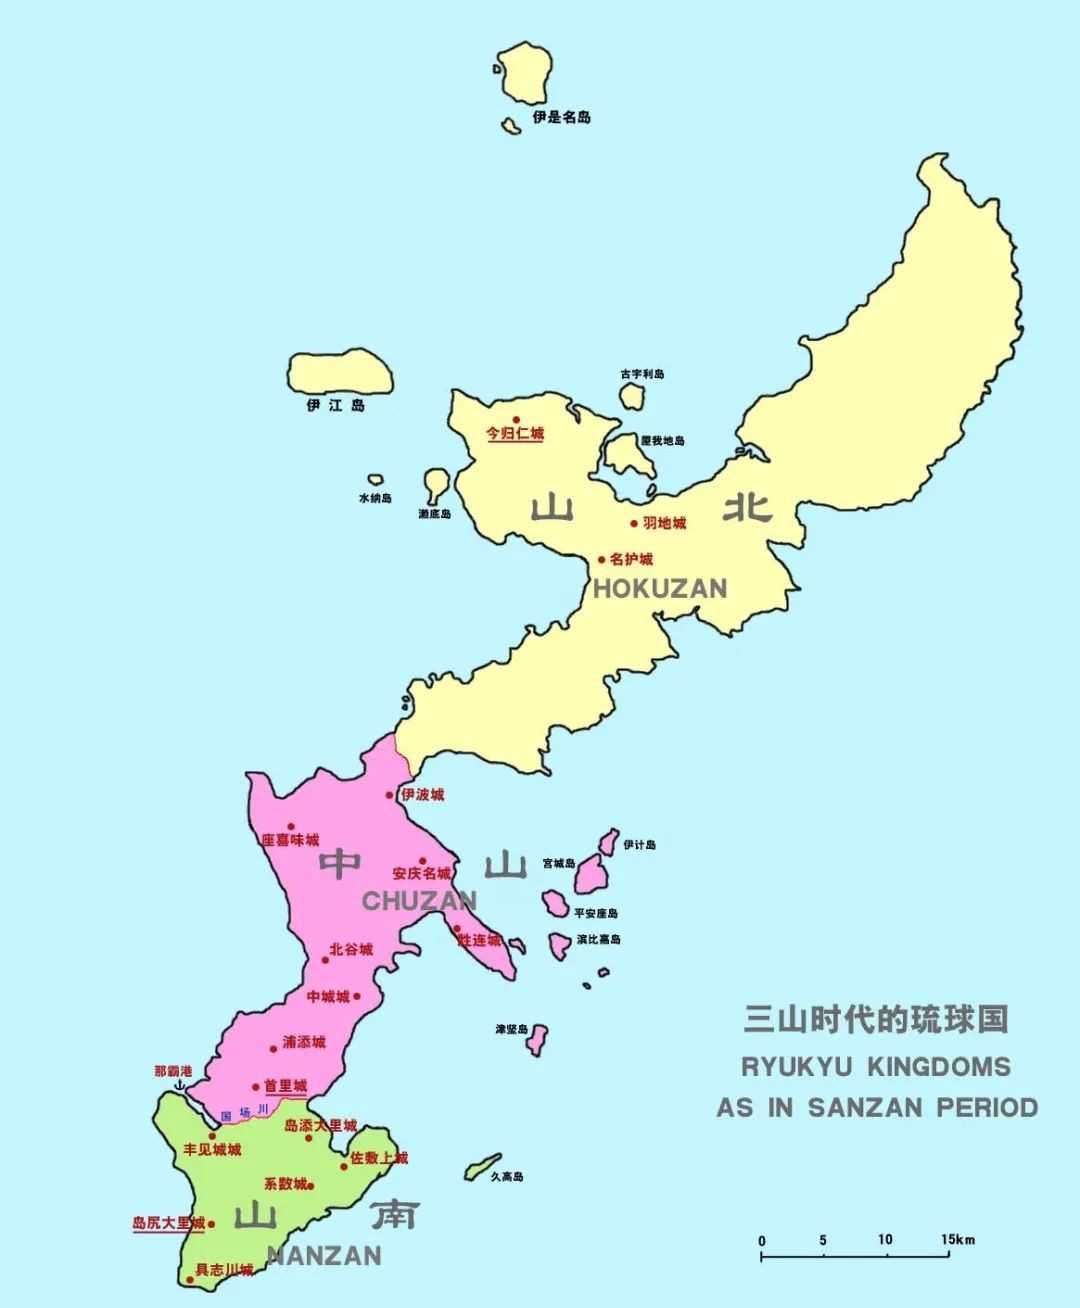 琉球群岛，与我国有什么渊源？